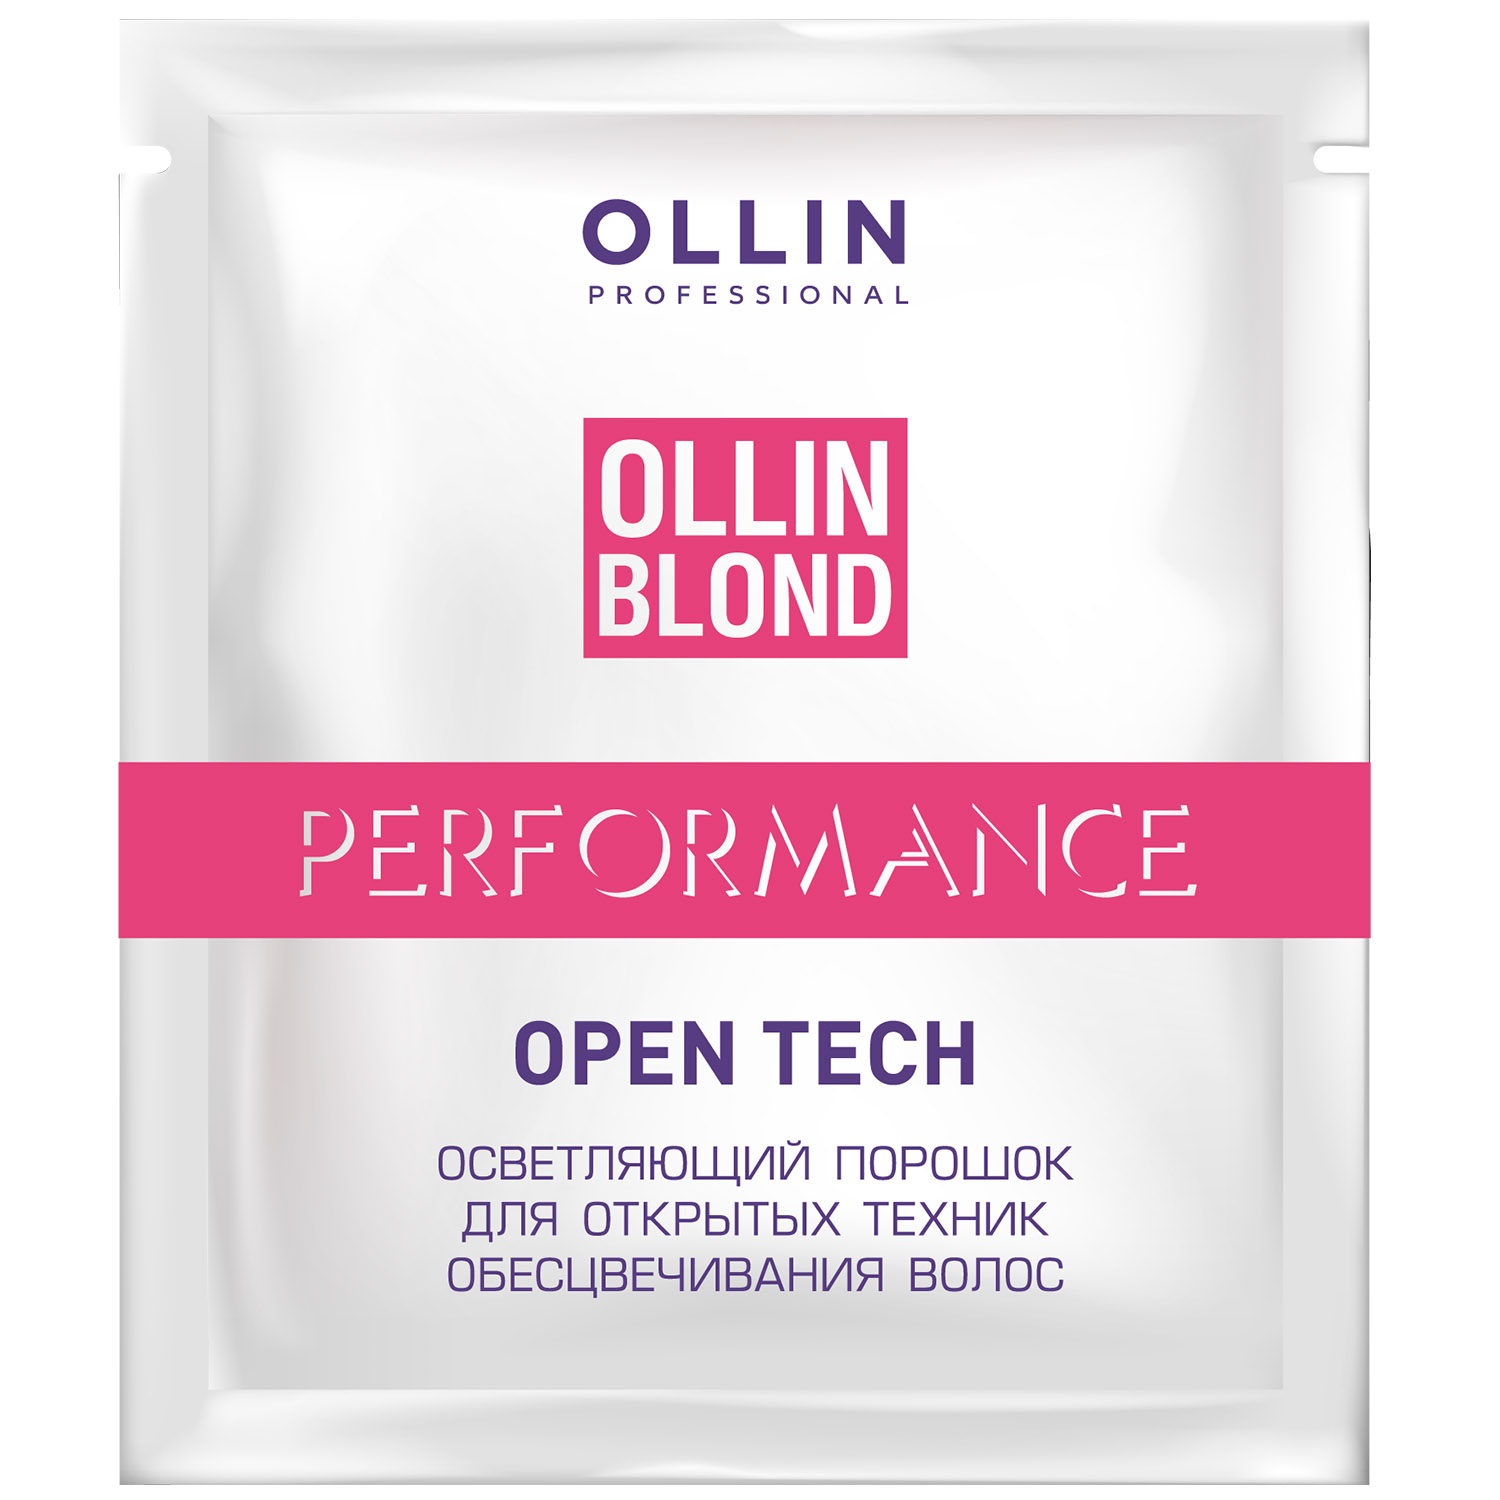 Ollin Professional Осветляющий порошок Open Tech для открытых техник обесцвечивания волос, 30 г (Ollin Professional, Ollin Blond)